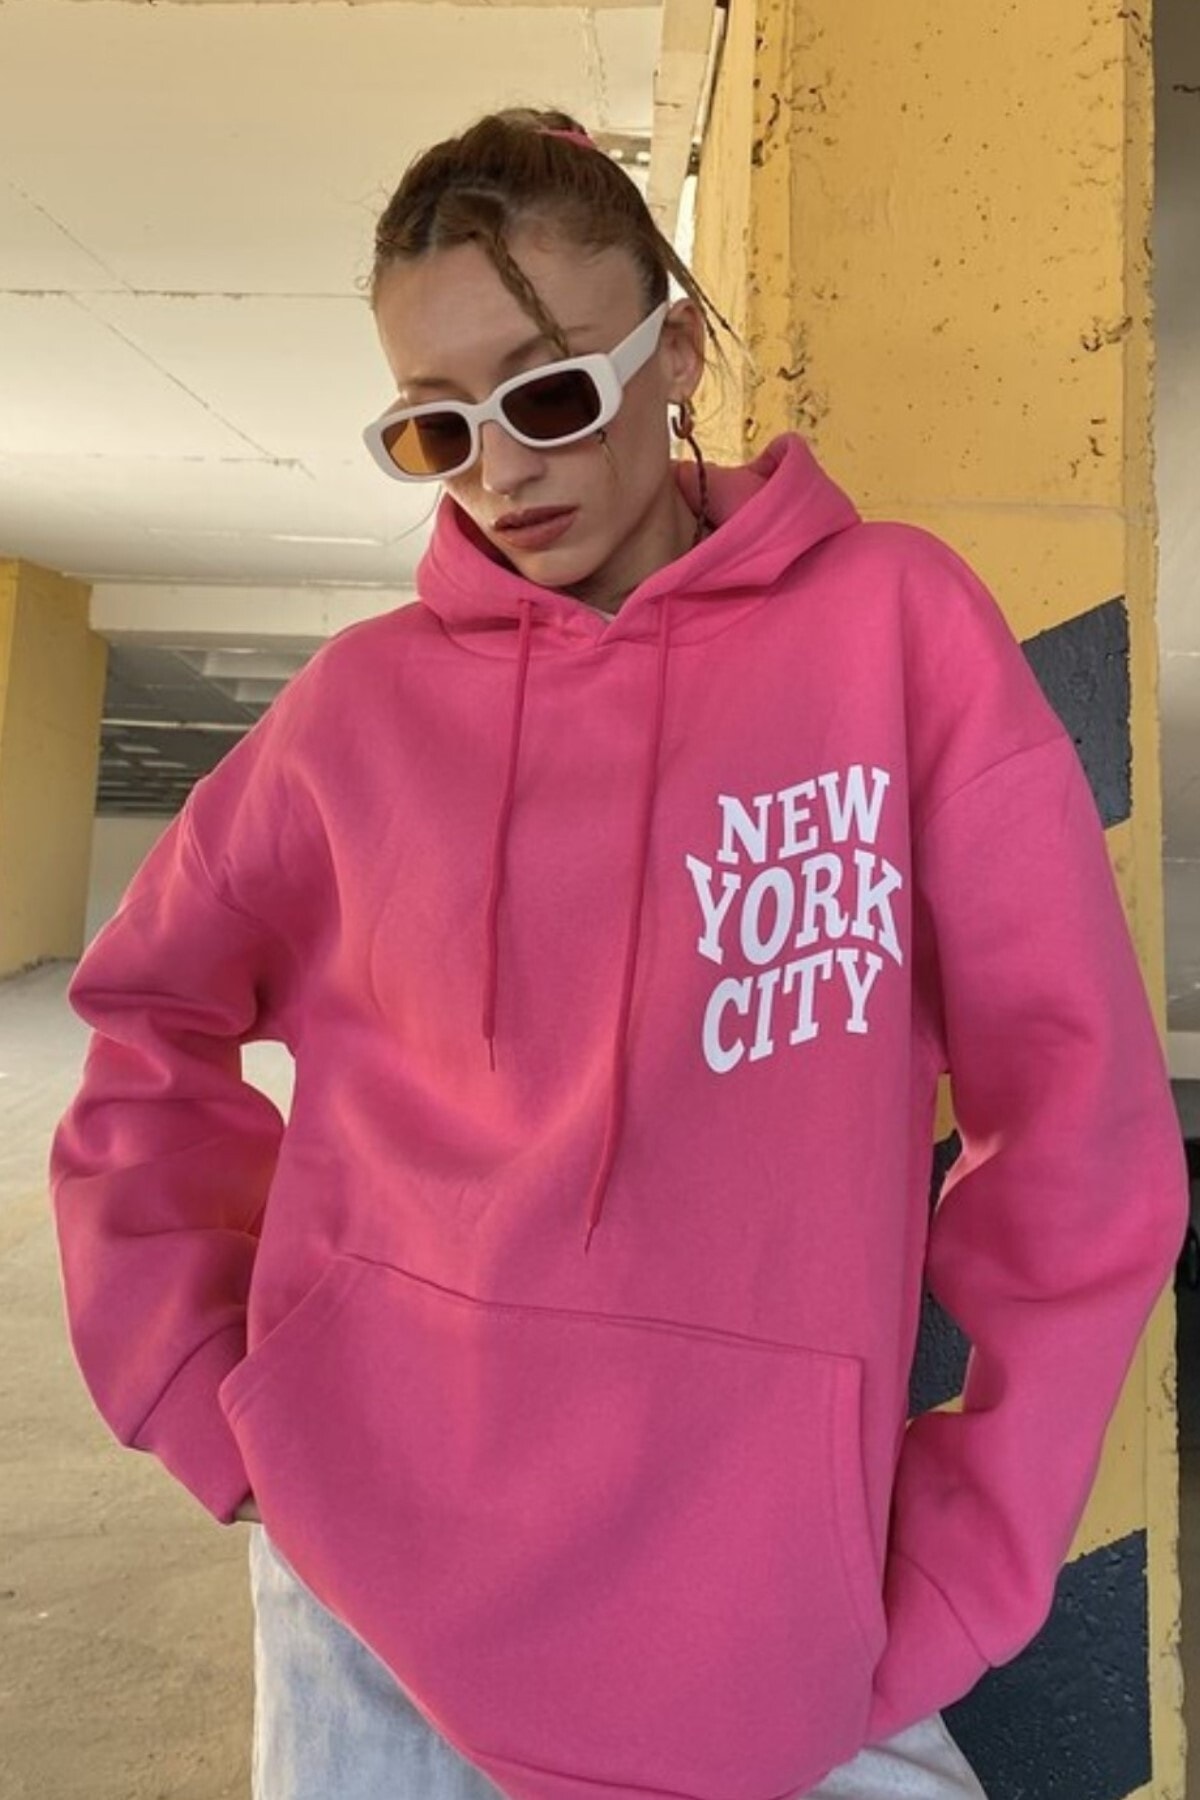 Levně MODAGEN Women's Pink New York City Printed Hoodie Oversized Sweatshirt.